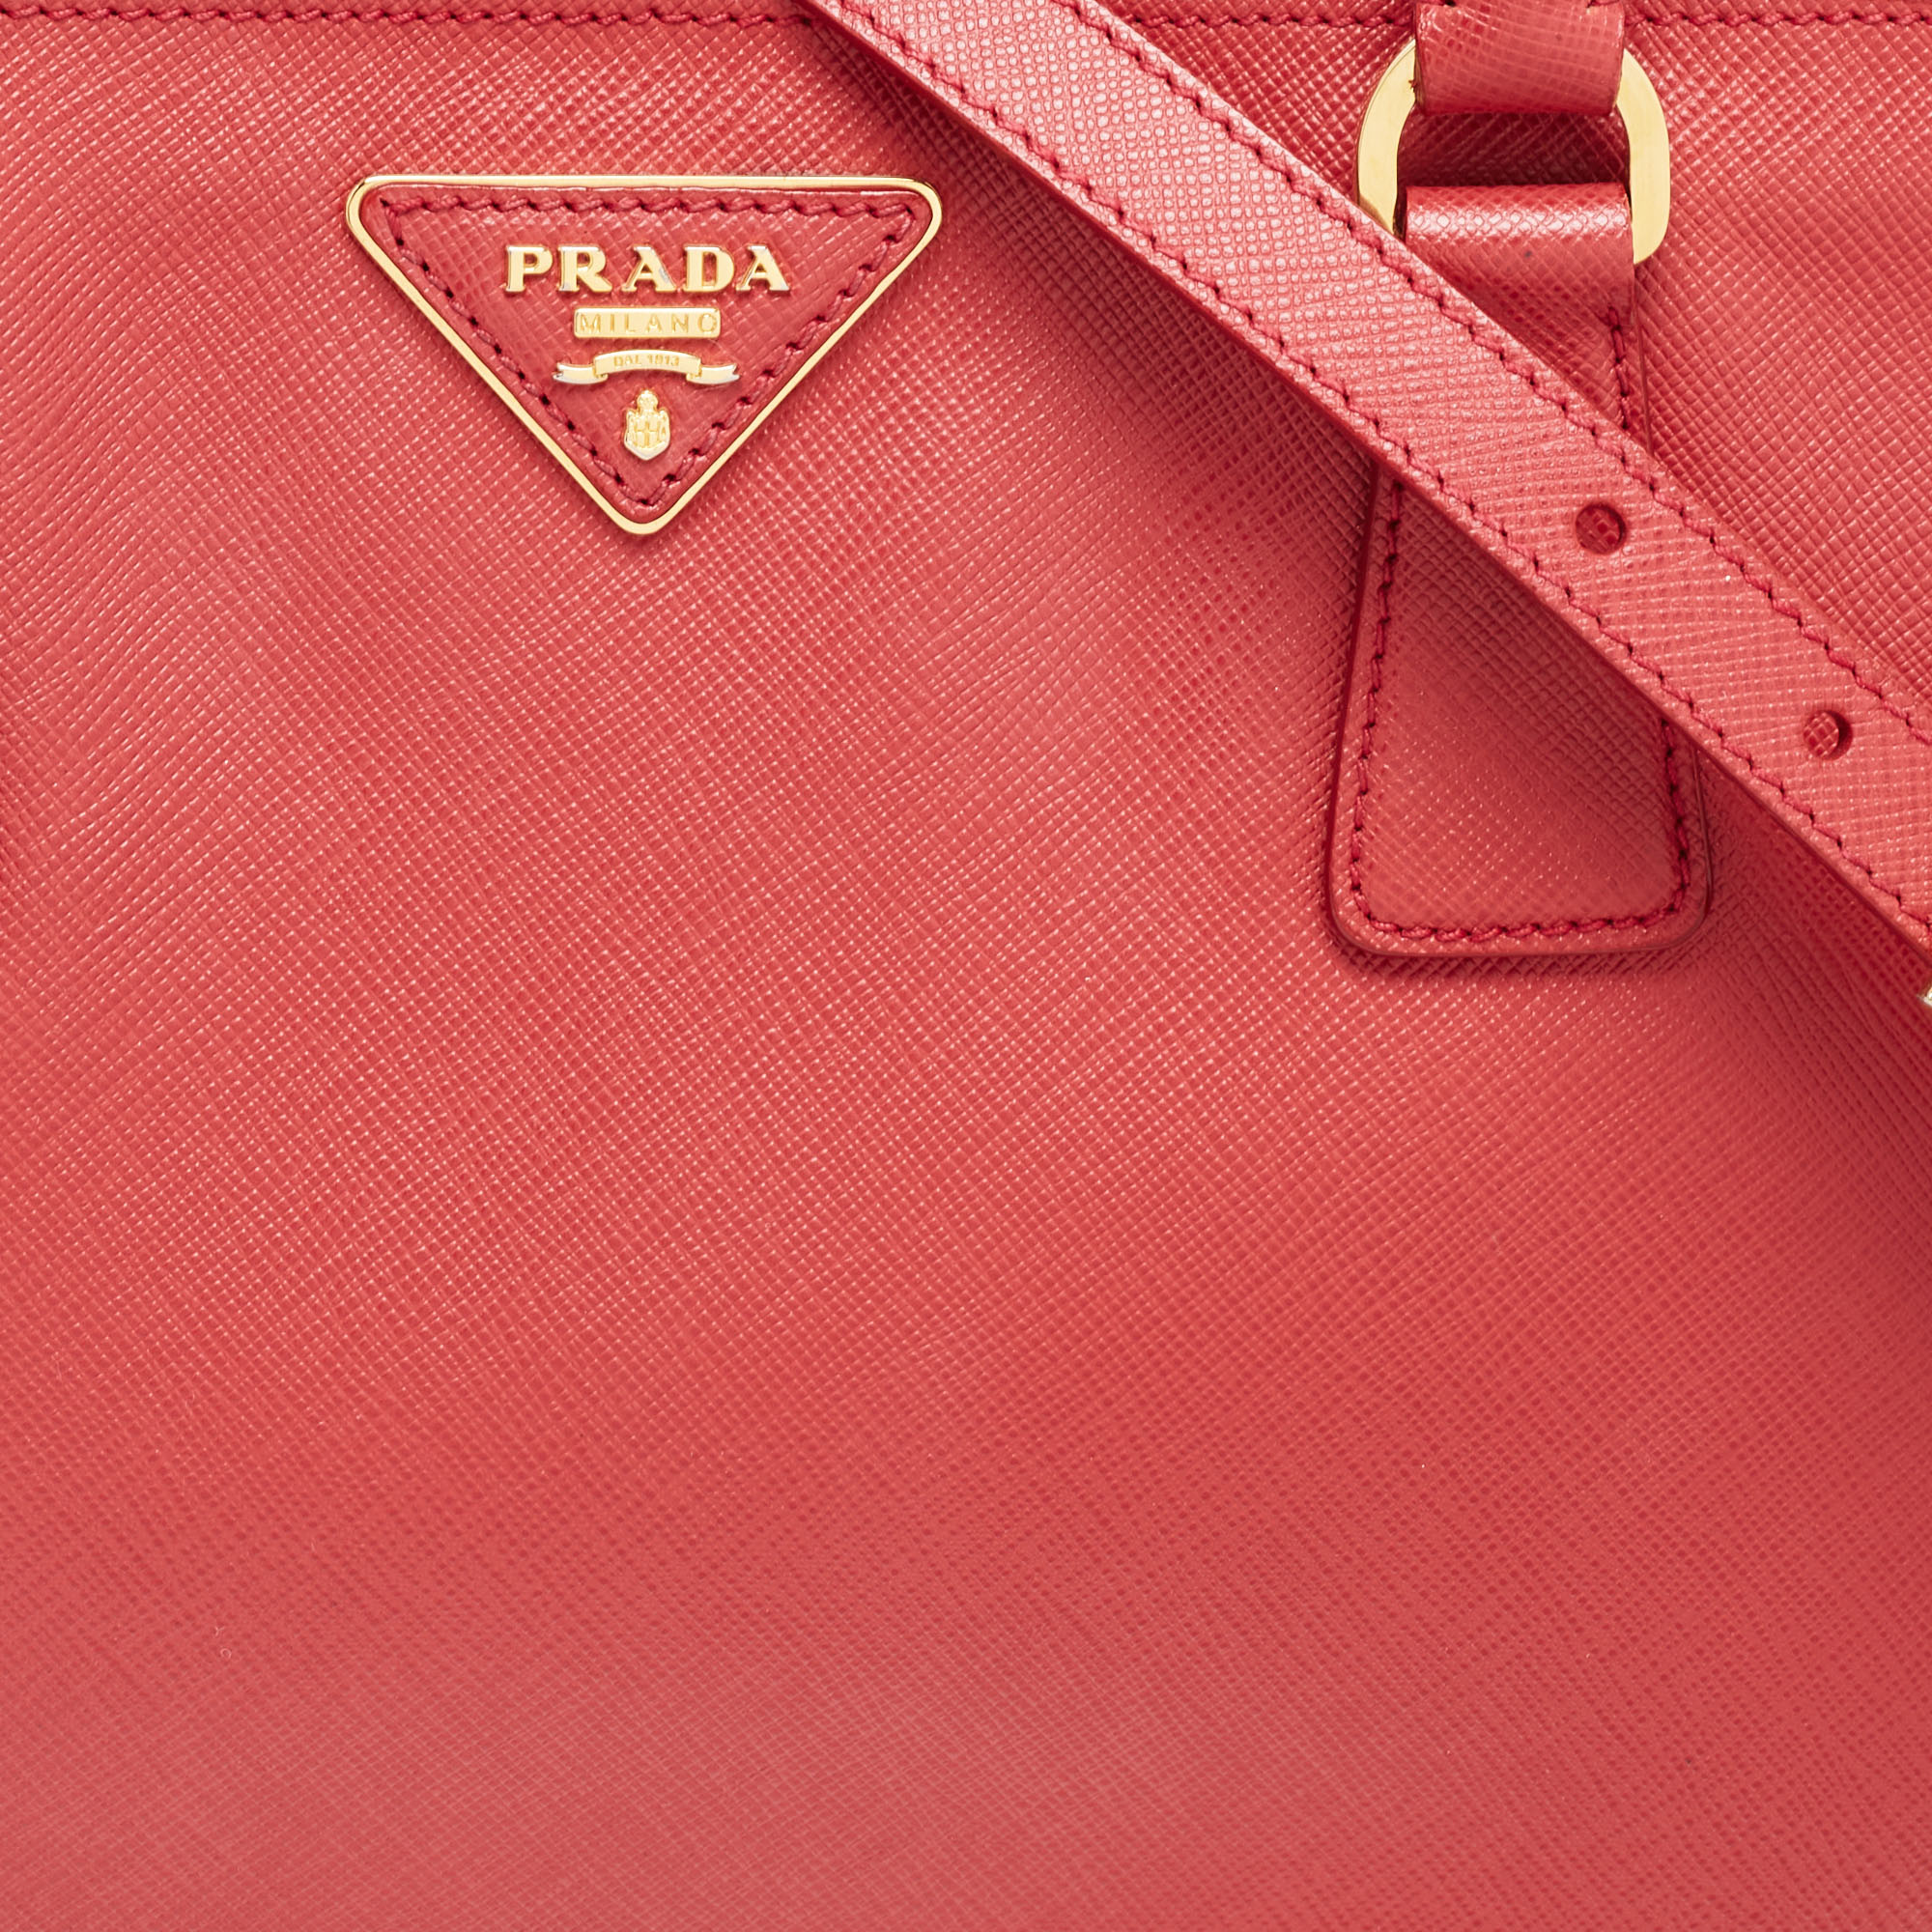 Prada Red Leather Medium Galleria Tote Bag